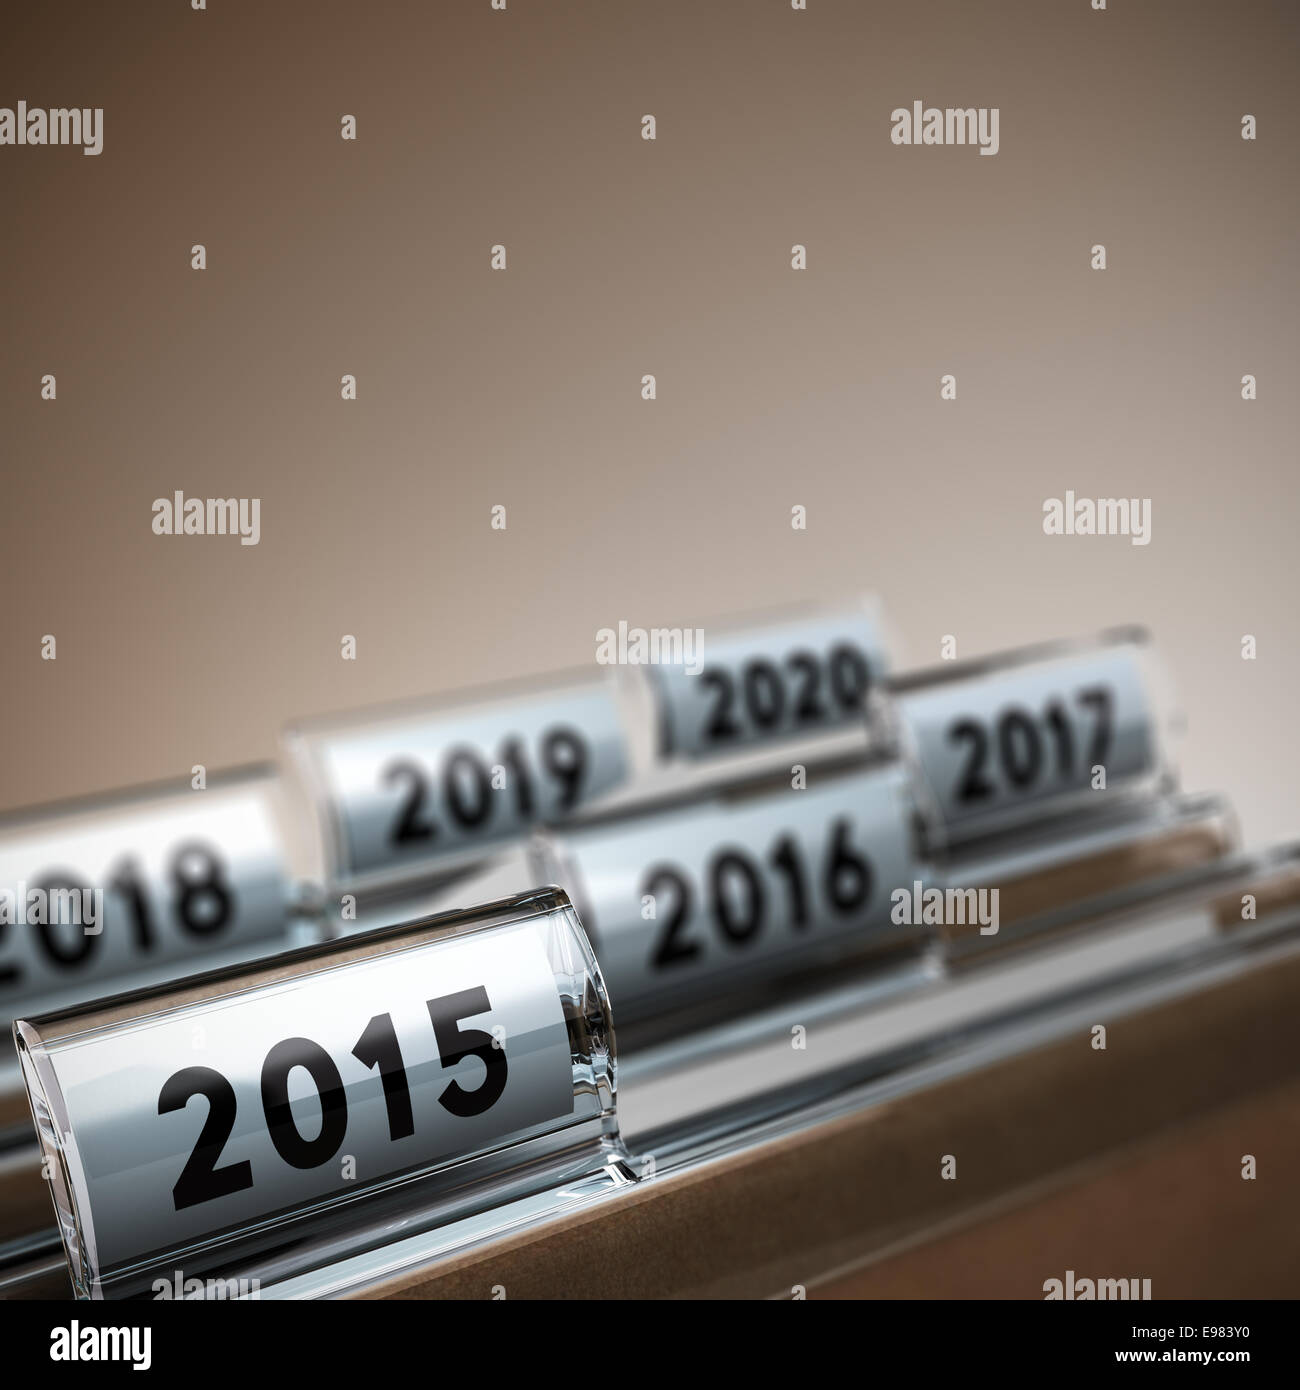 L'onglet fichier avec l'accent sur l'année 2015, fond beige. Concept de l'image pour l'illustration de la mi-terme ou à long terme, la stratégie de l'entreprise. Banque D'Images